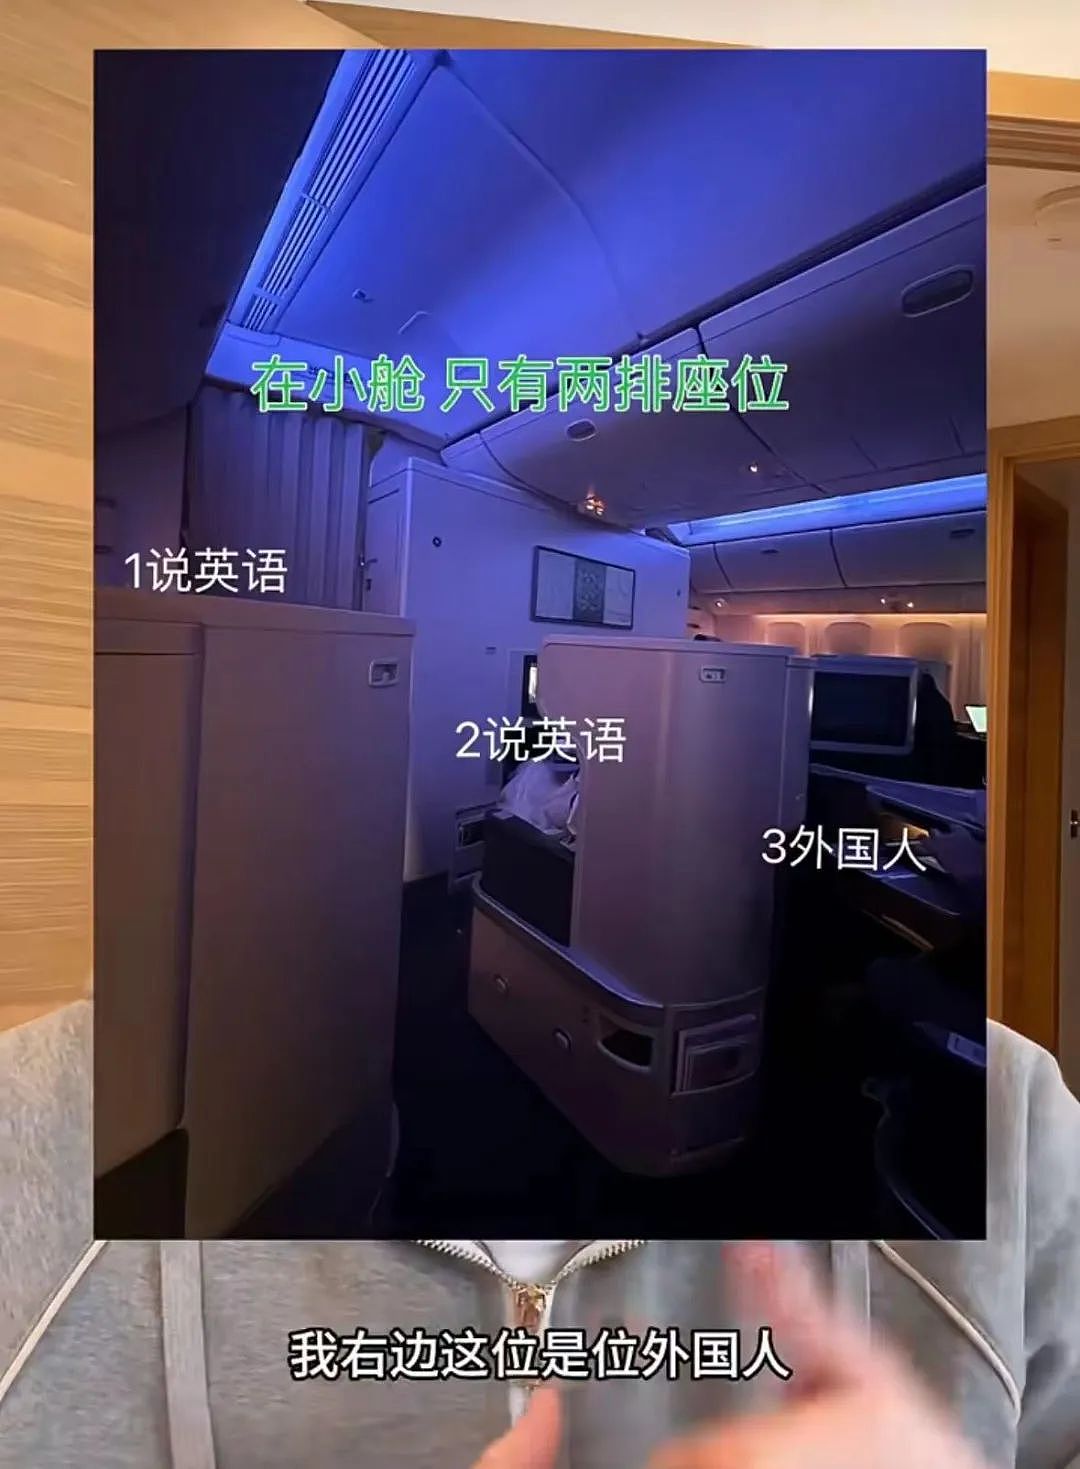 英语不好被无视，中国小哥吐槽某航班歧视说中文乘客，跪舔外国人，评论区瞬间炸了（视频/组图） - 2